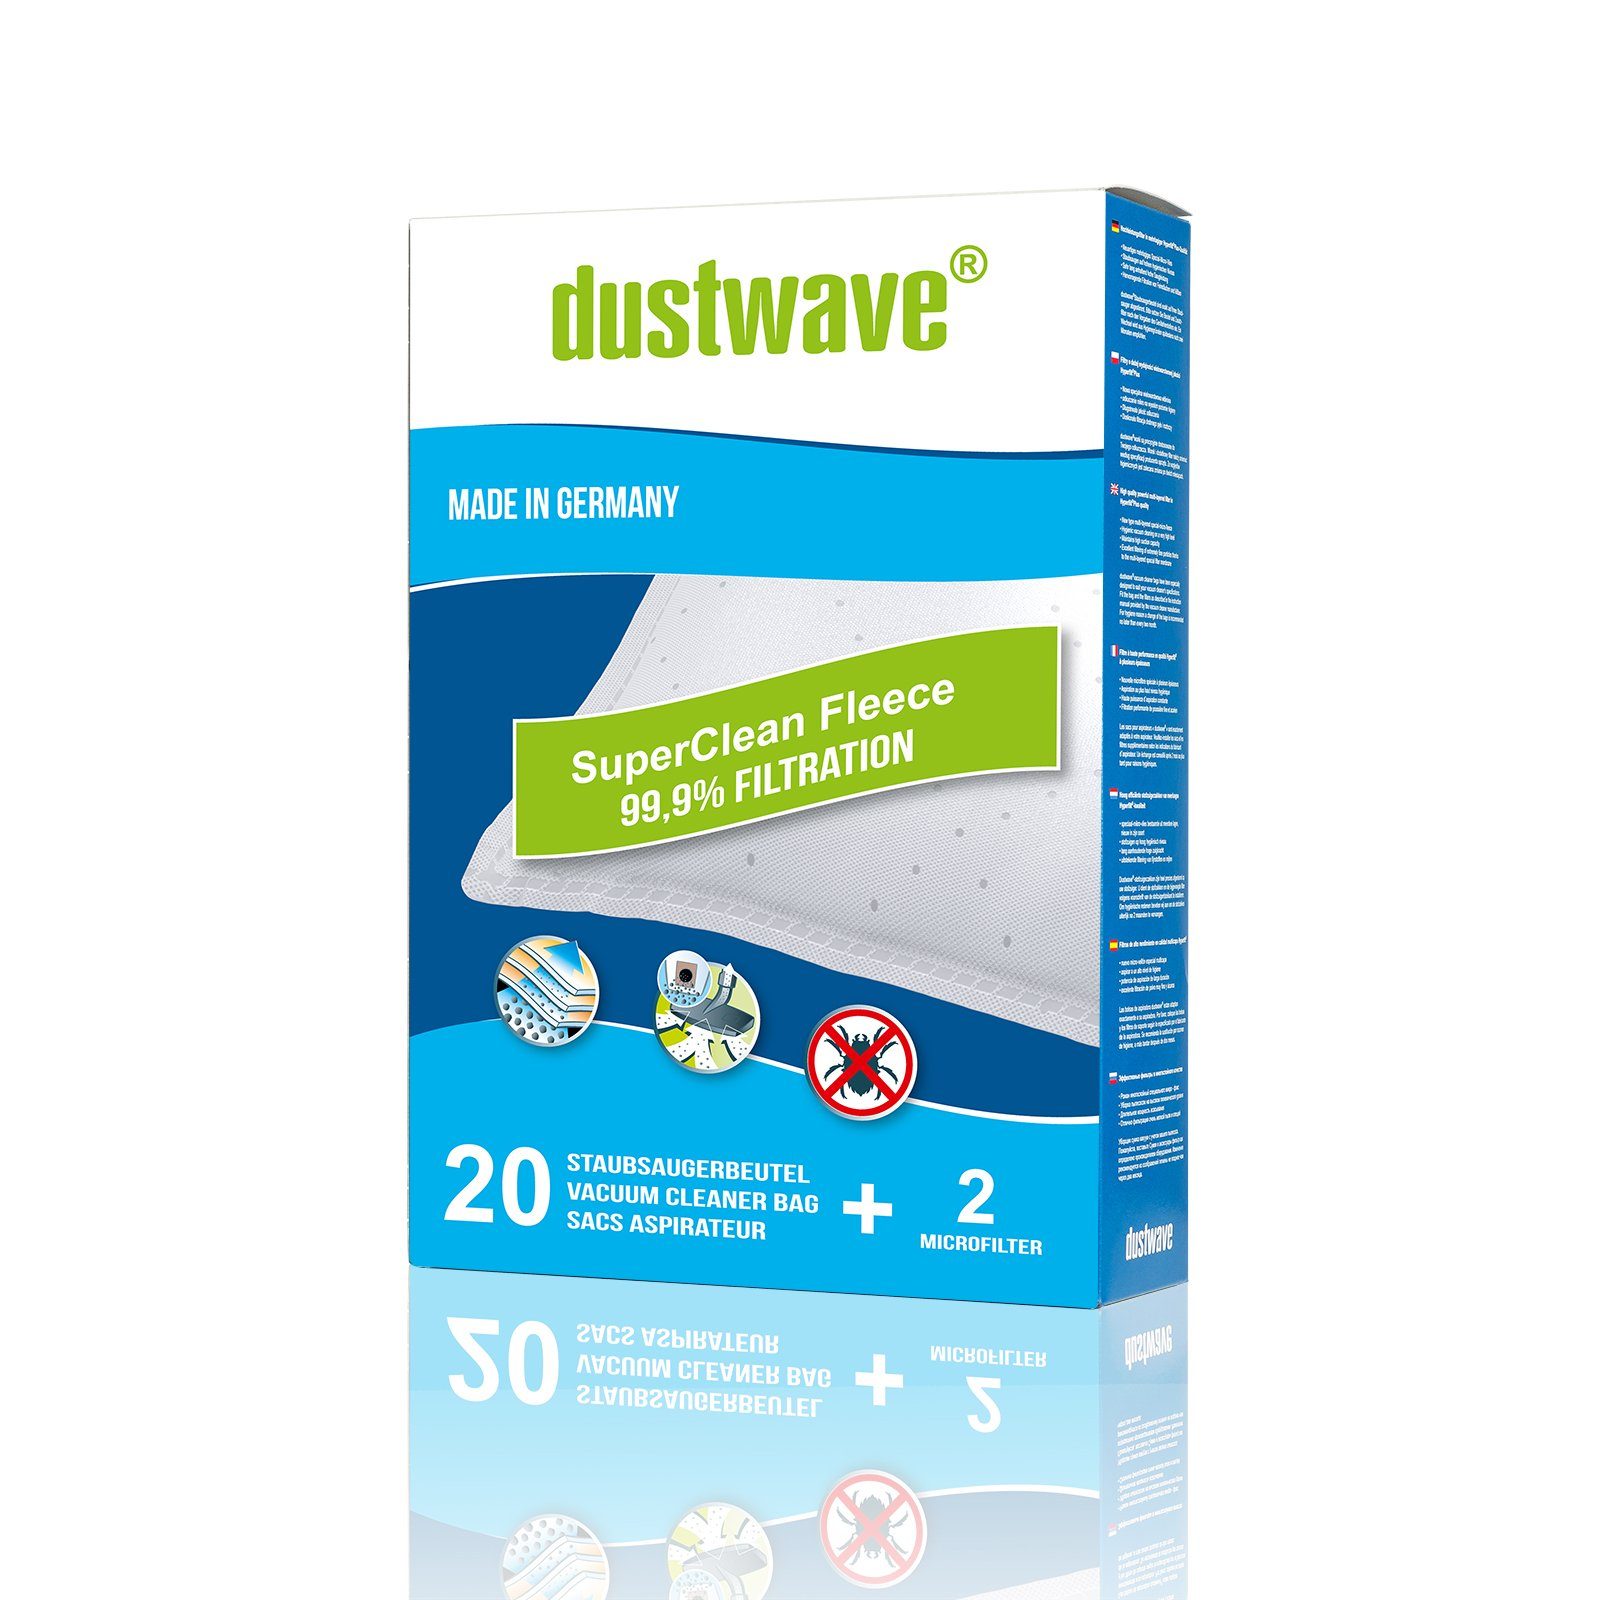 Dustwave Staubsaugerbeutel Megapack, passend für Base BA 5803, 20 St., Megapack, 20 Staubsaugerbeutel + 2 Hepa-Filter (ca. 15x15cm - zuschneidbar)